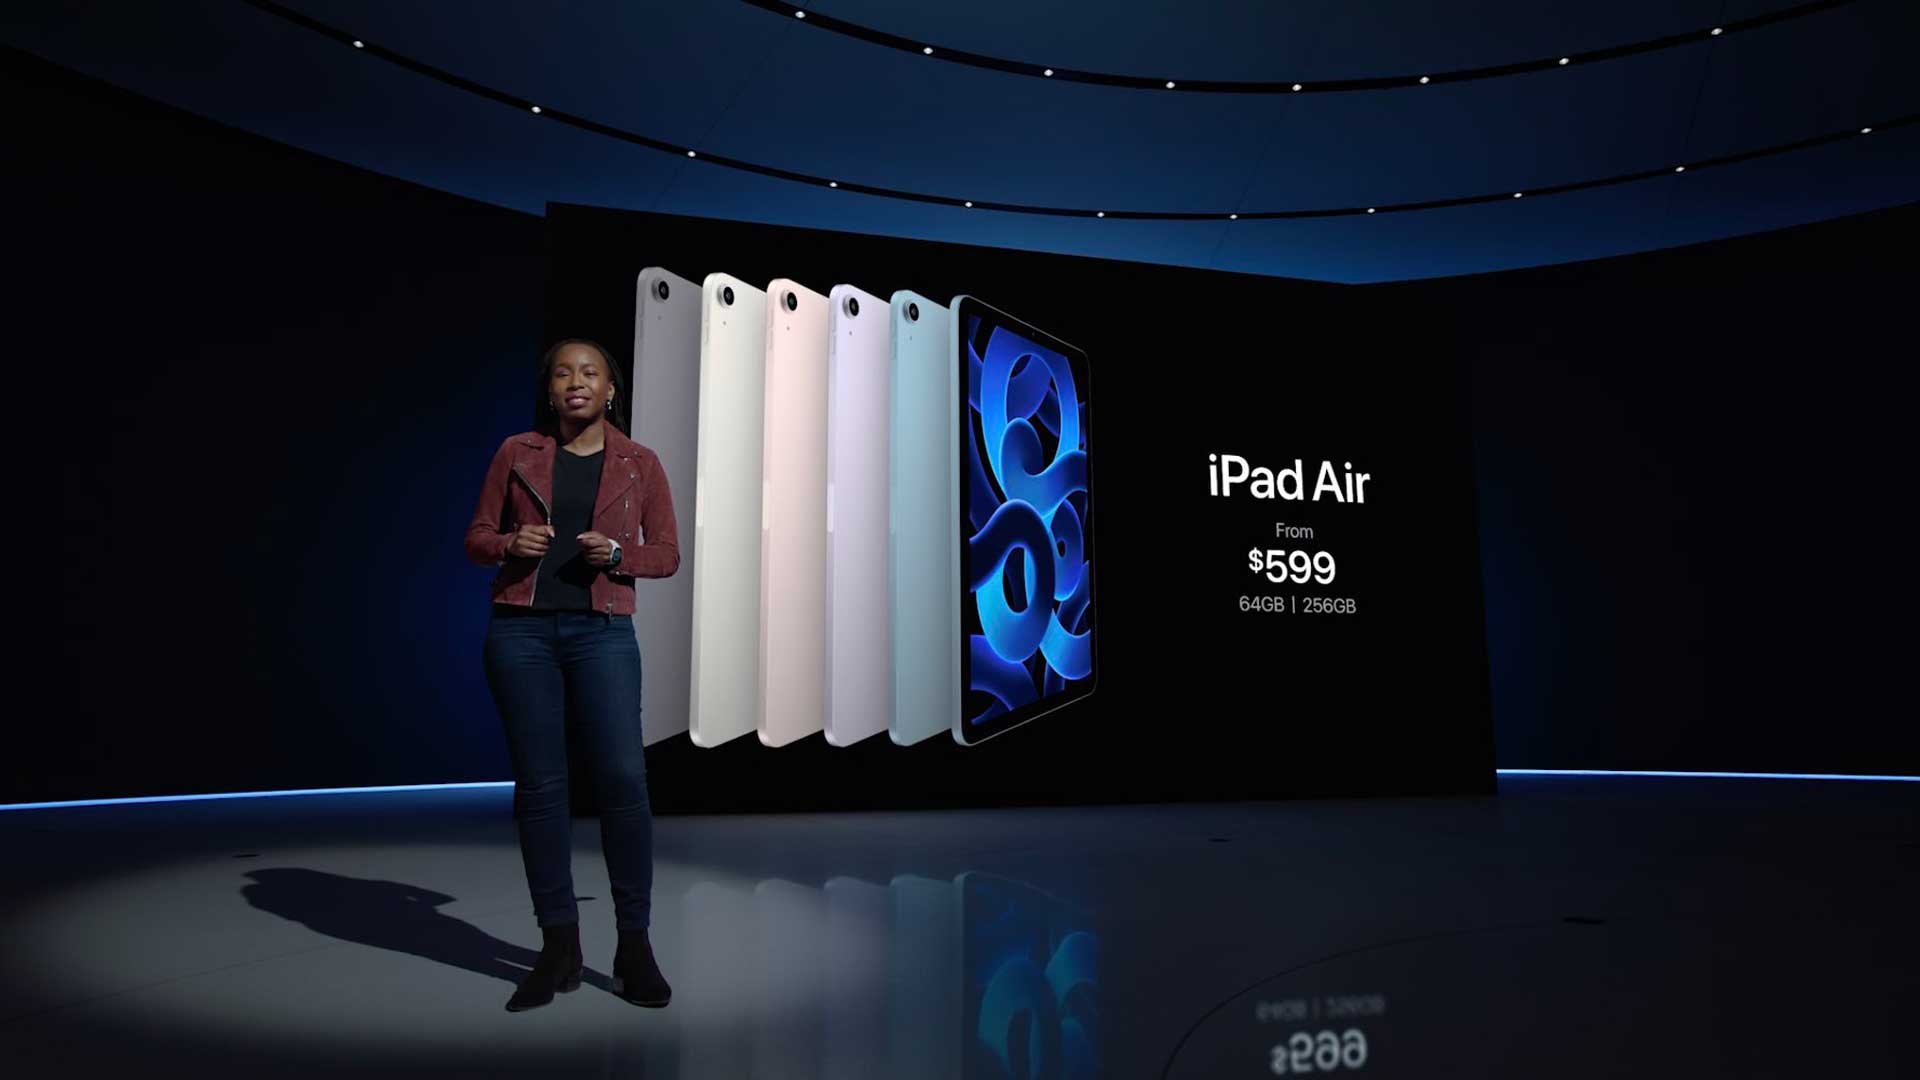 معرفی آیپد ایر 5 توسط اپل در رویداد ماه مارچ/مارس سال ۲۰۲۲ میلادی